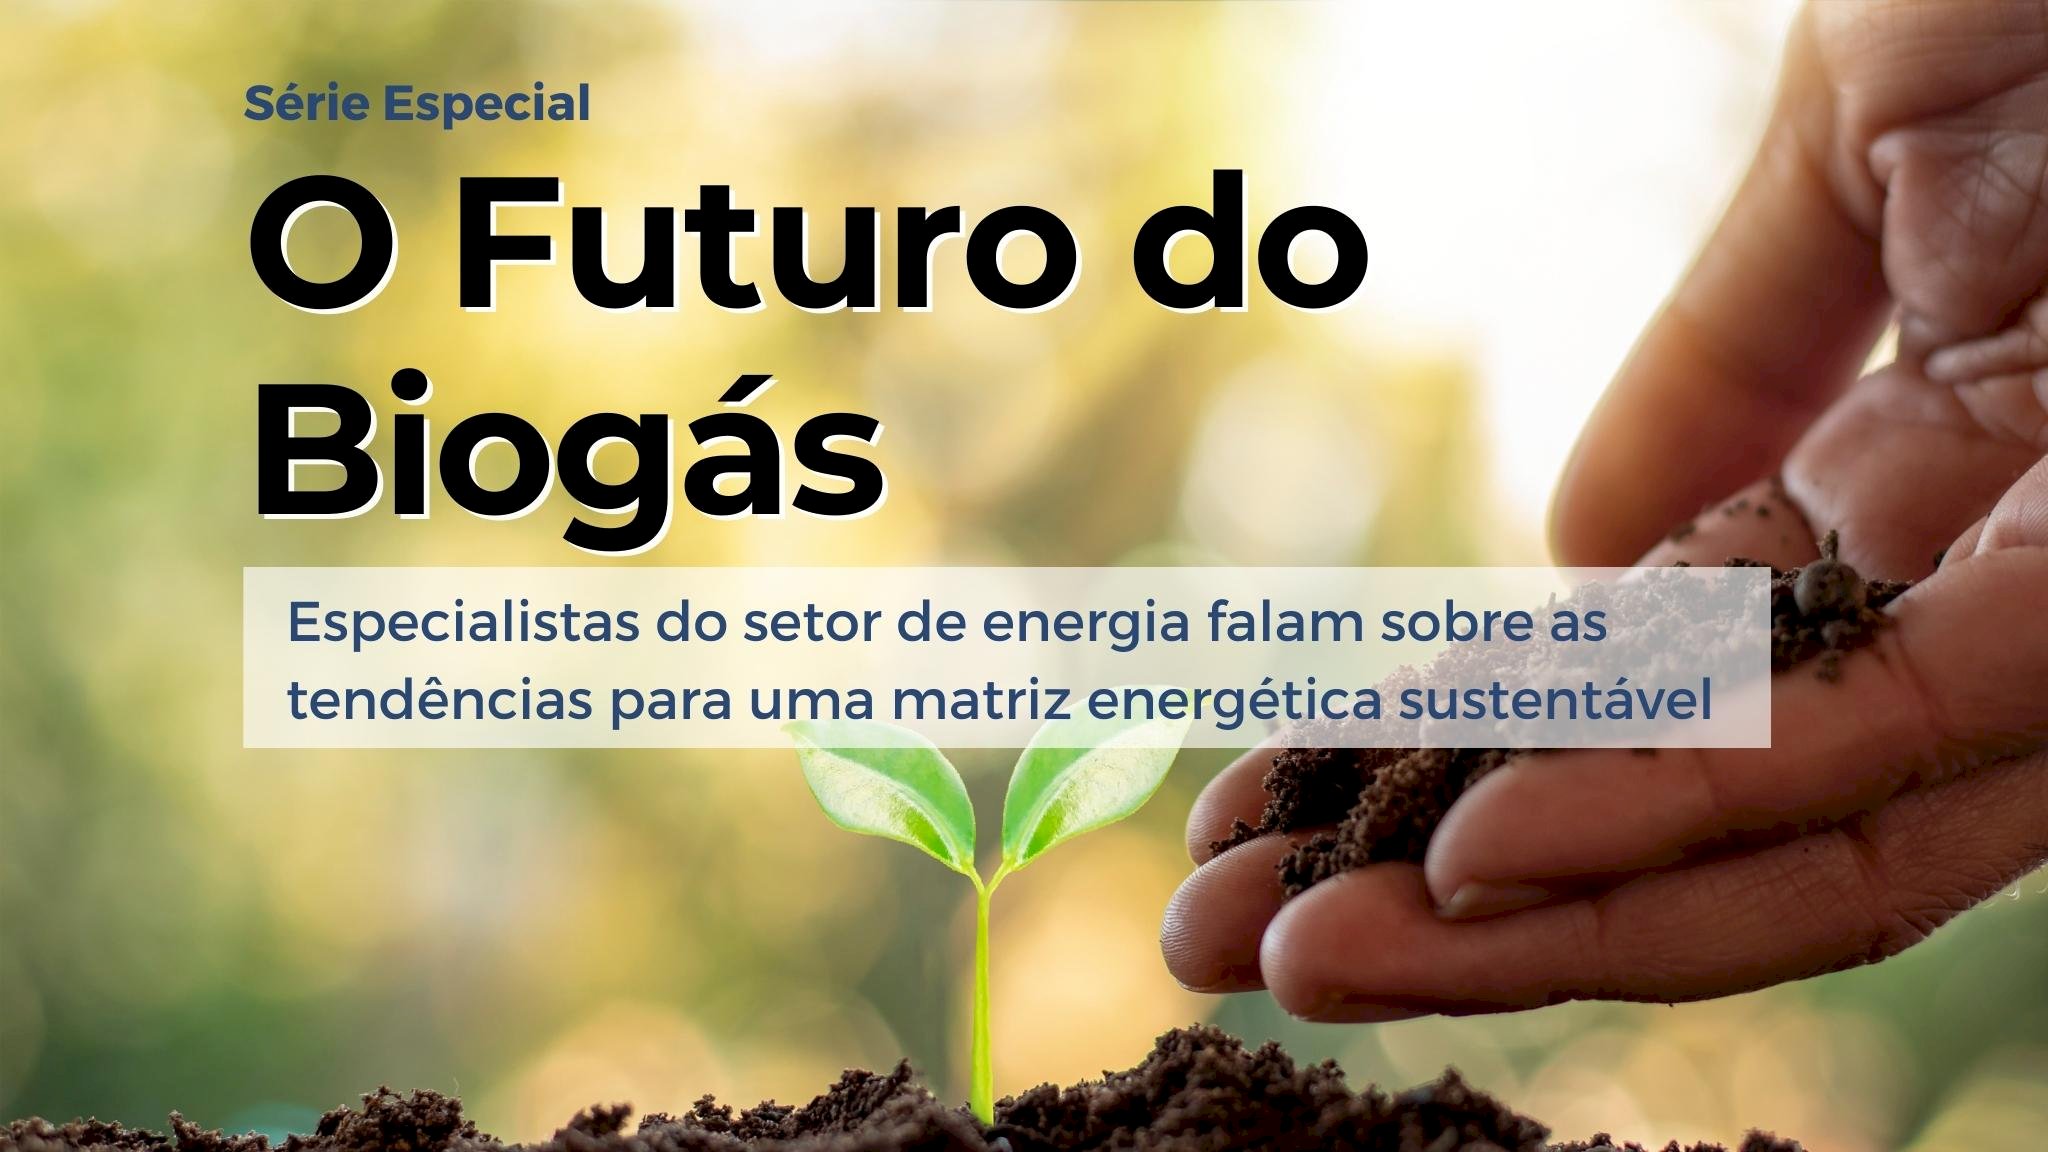 Qual será o futuro do biogás? Ep 2 Bernardo Marangon